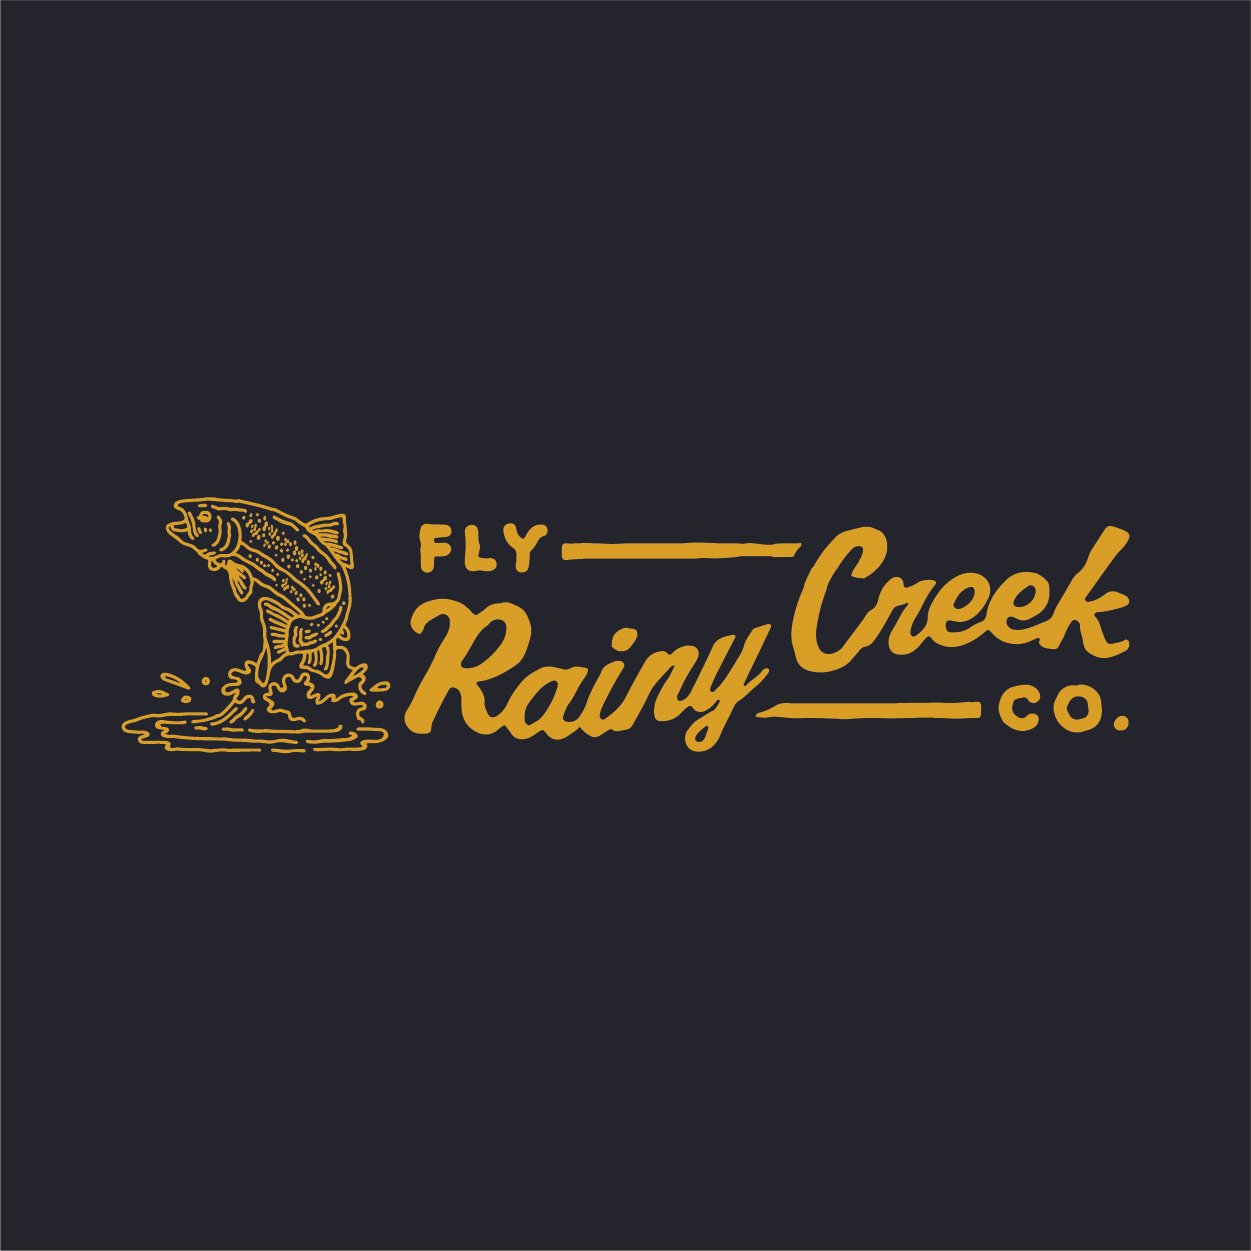 Rainy Creek Fly Co.